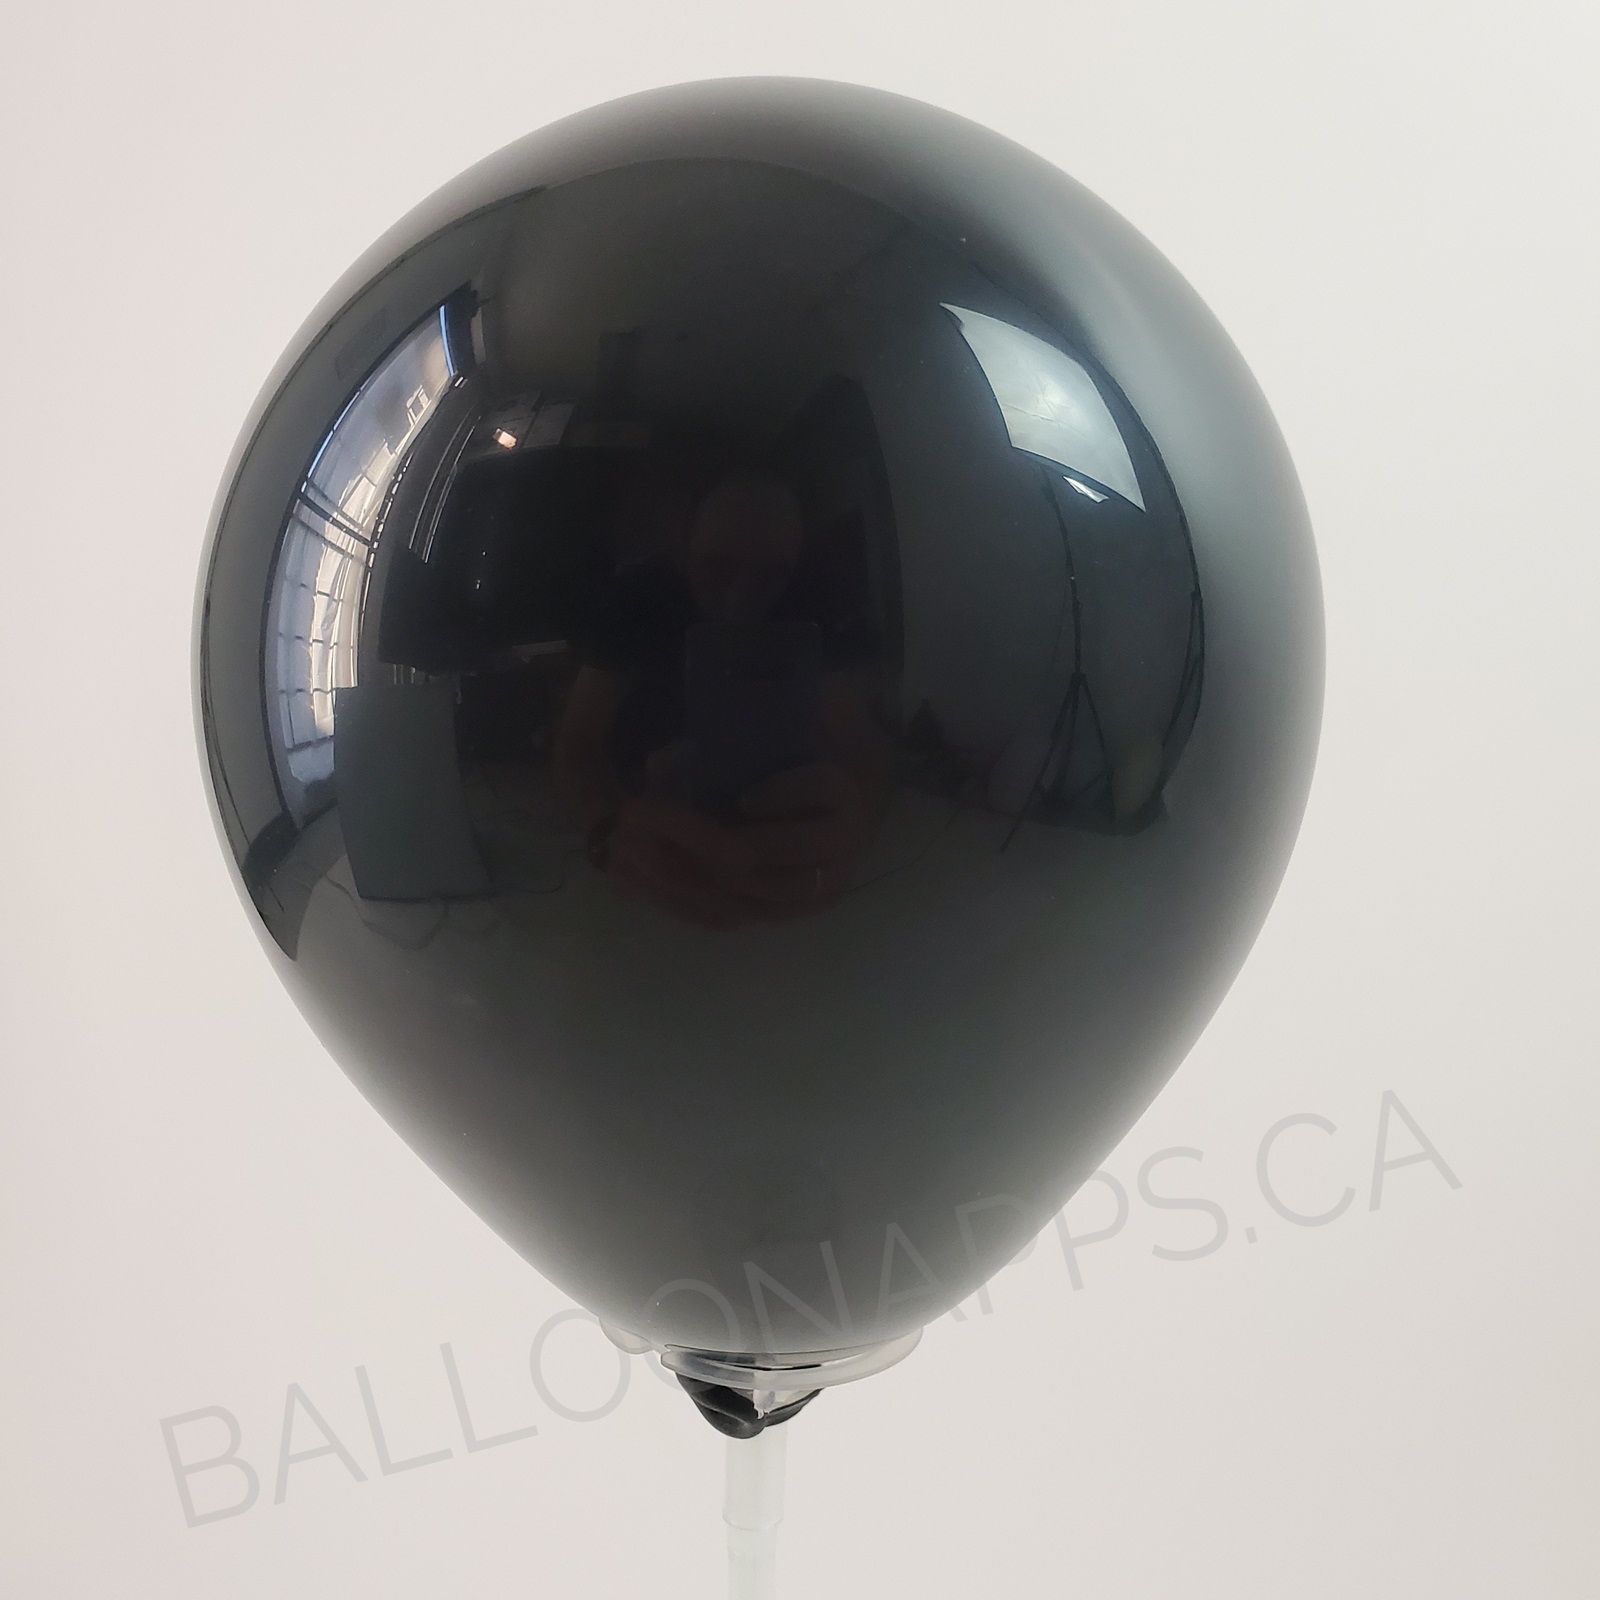 balloon texture (25) 16